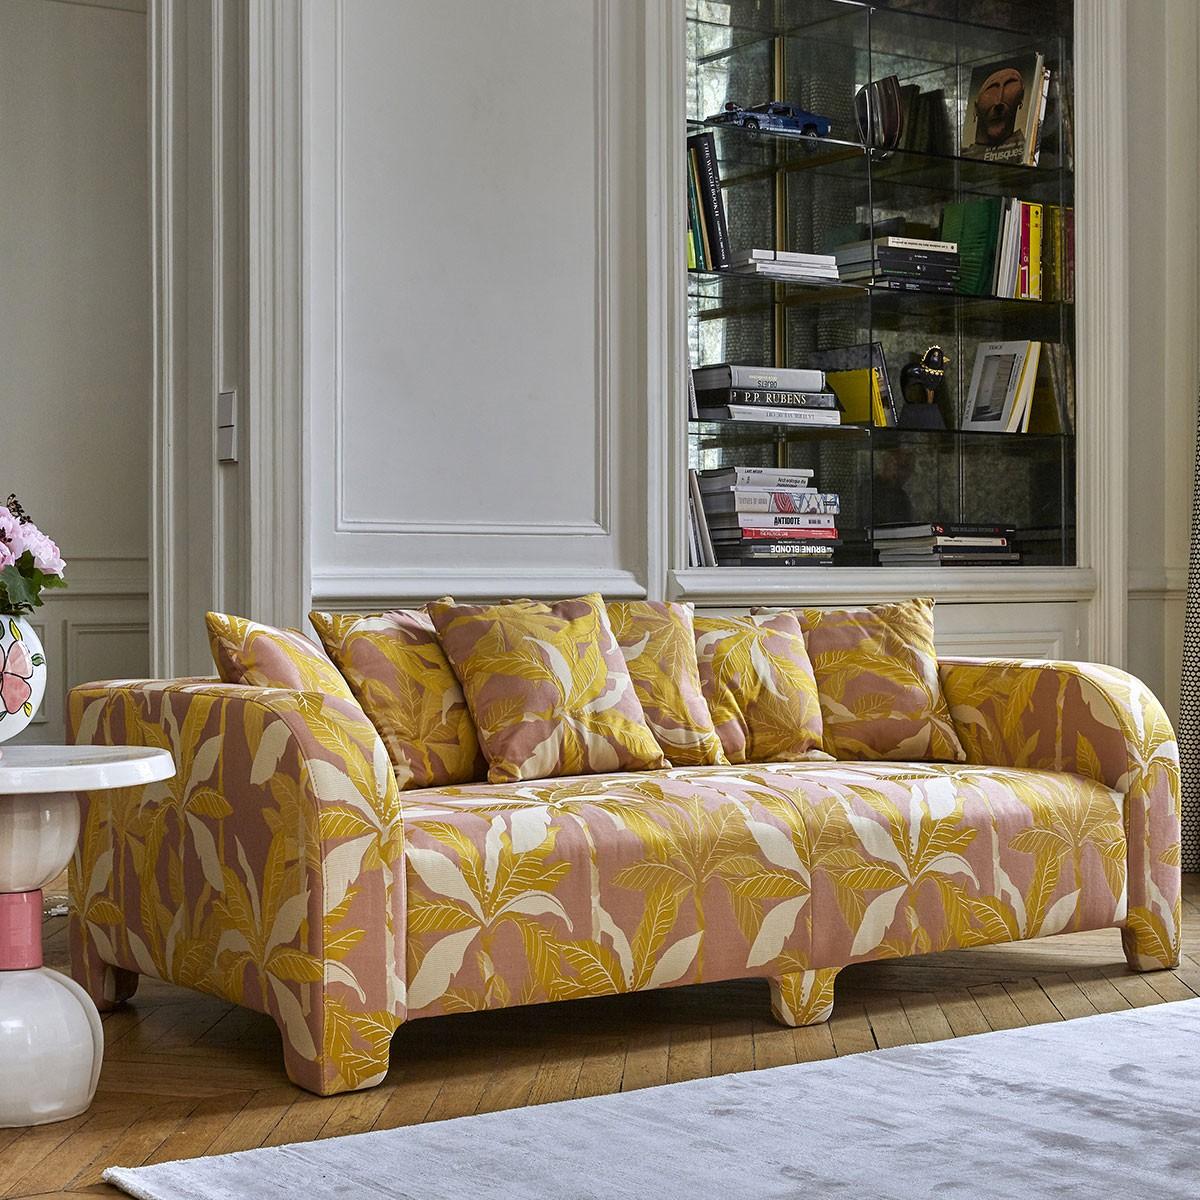 Popus Editions Graziella 4 Seater Sofa in Fuschia London Linen Fabric In New Condition For Sale In Paris, FR